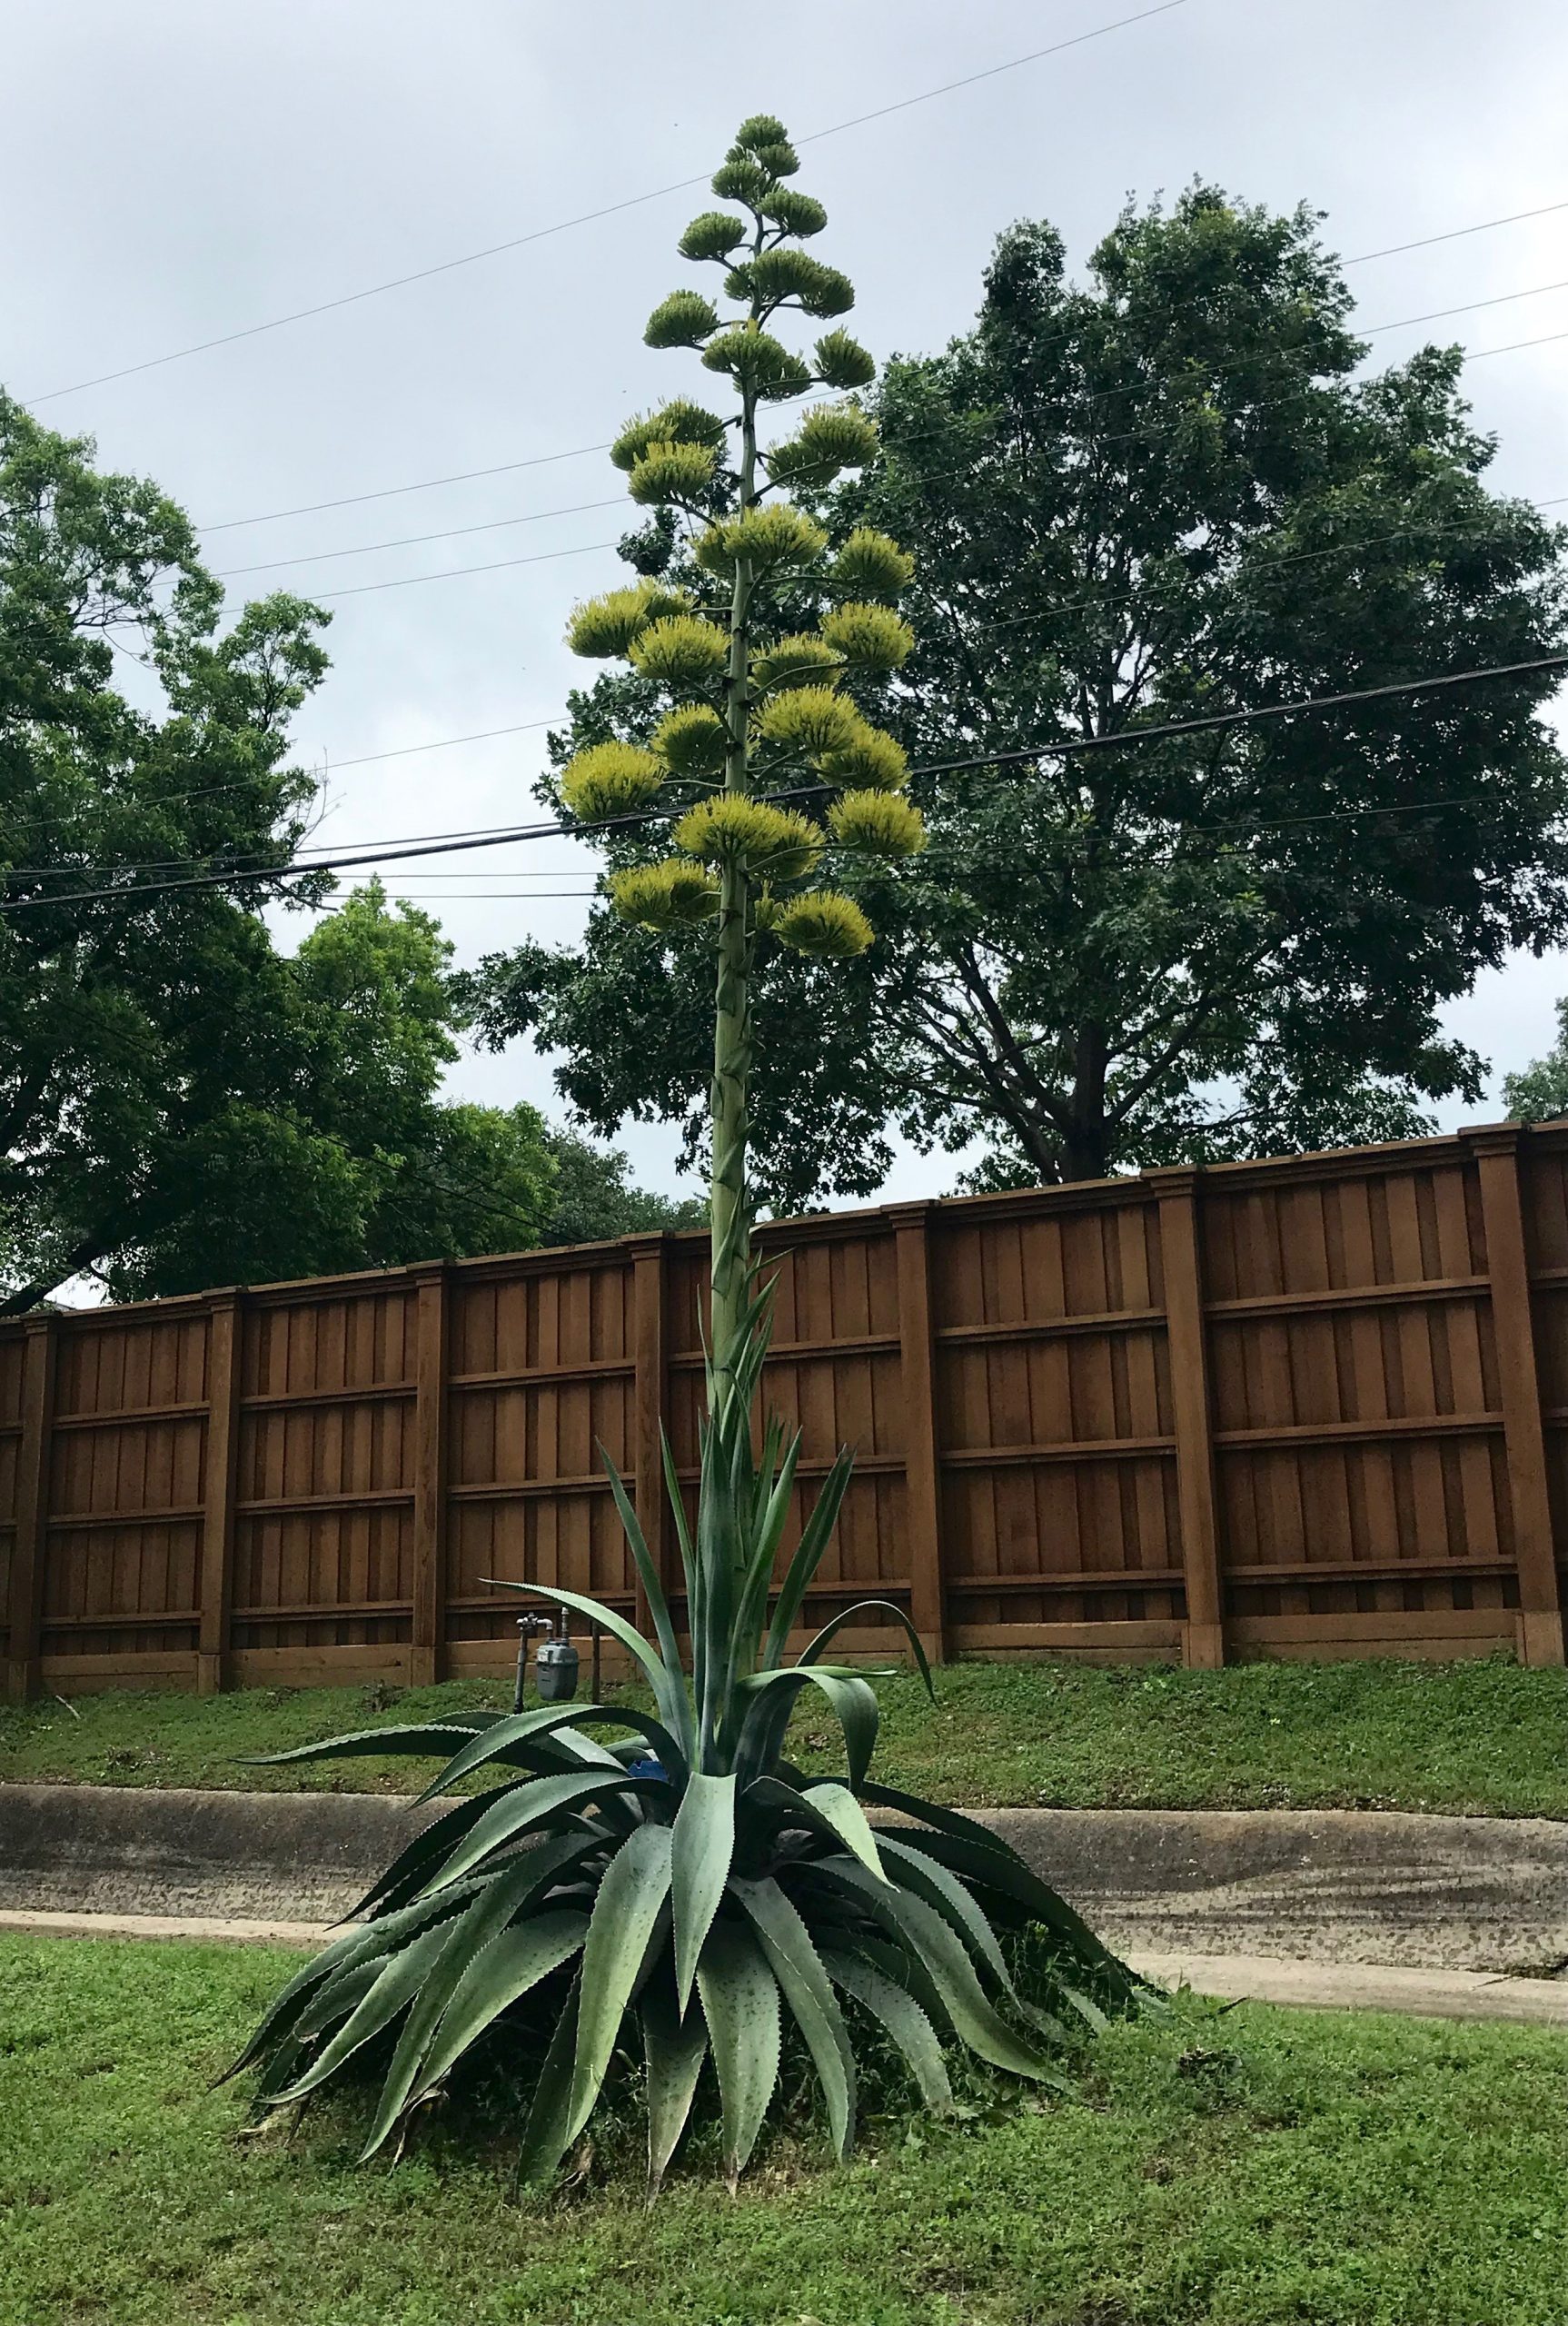 Look: Rare 'Century Plant' In Bloom In Lakewood - Lakewood/East Dallas